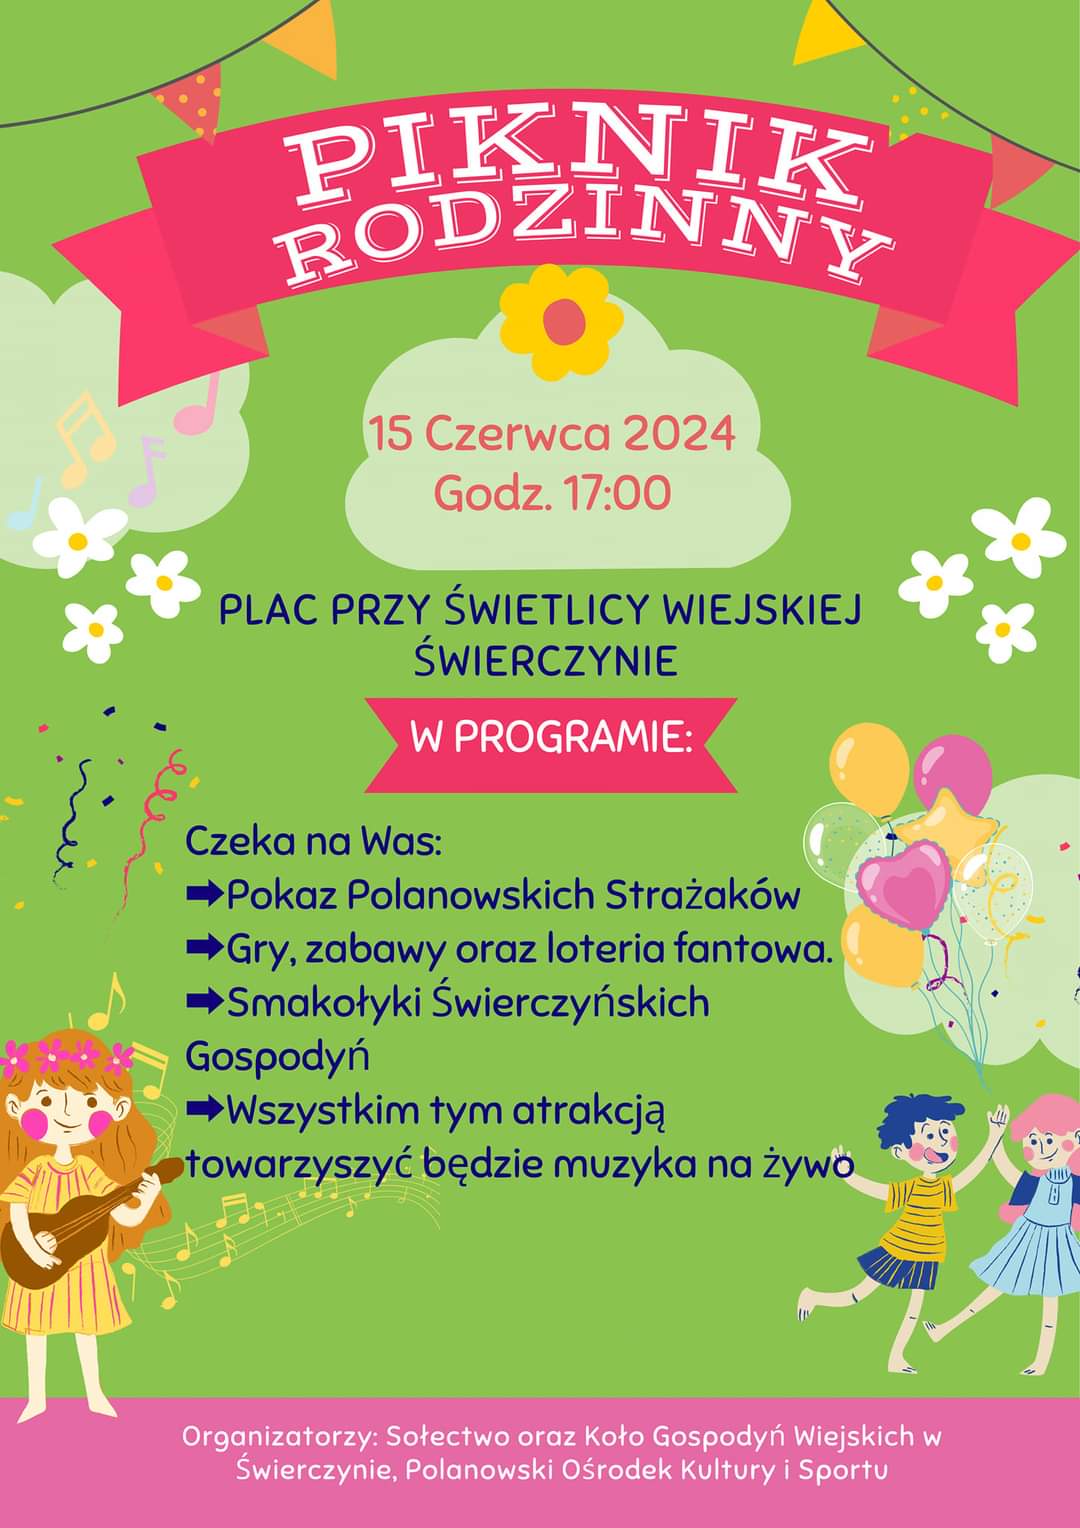 Plakat z zaproszeniem na piknik rodzinny w Świerczynie 15 czerwca 2024